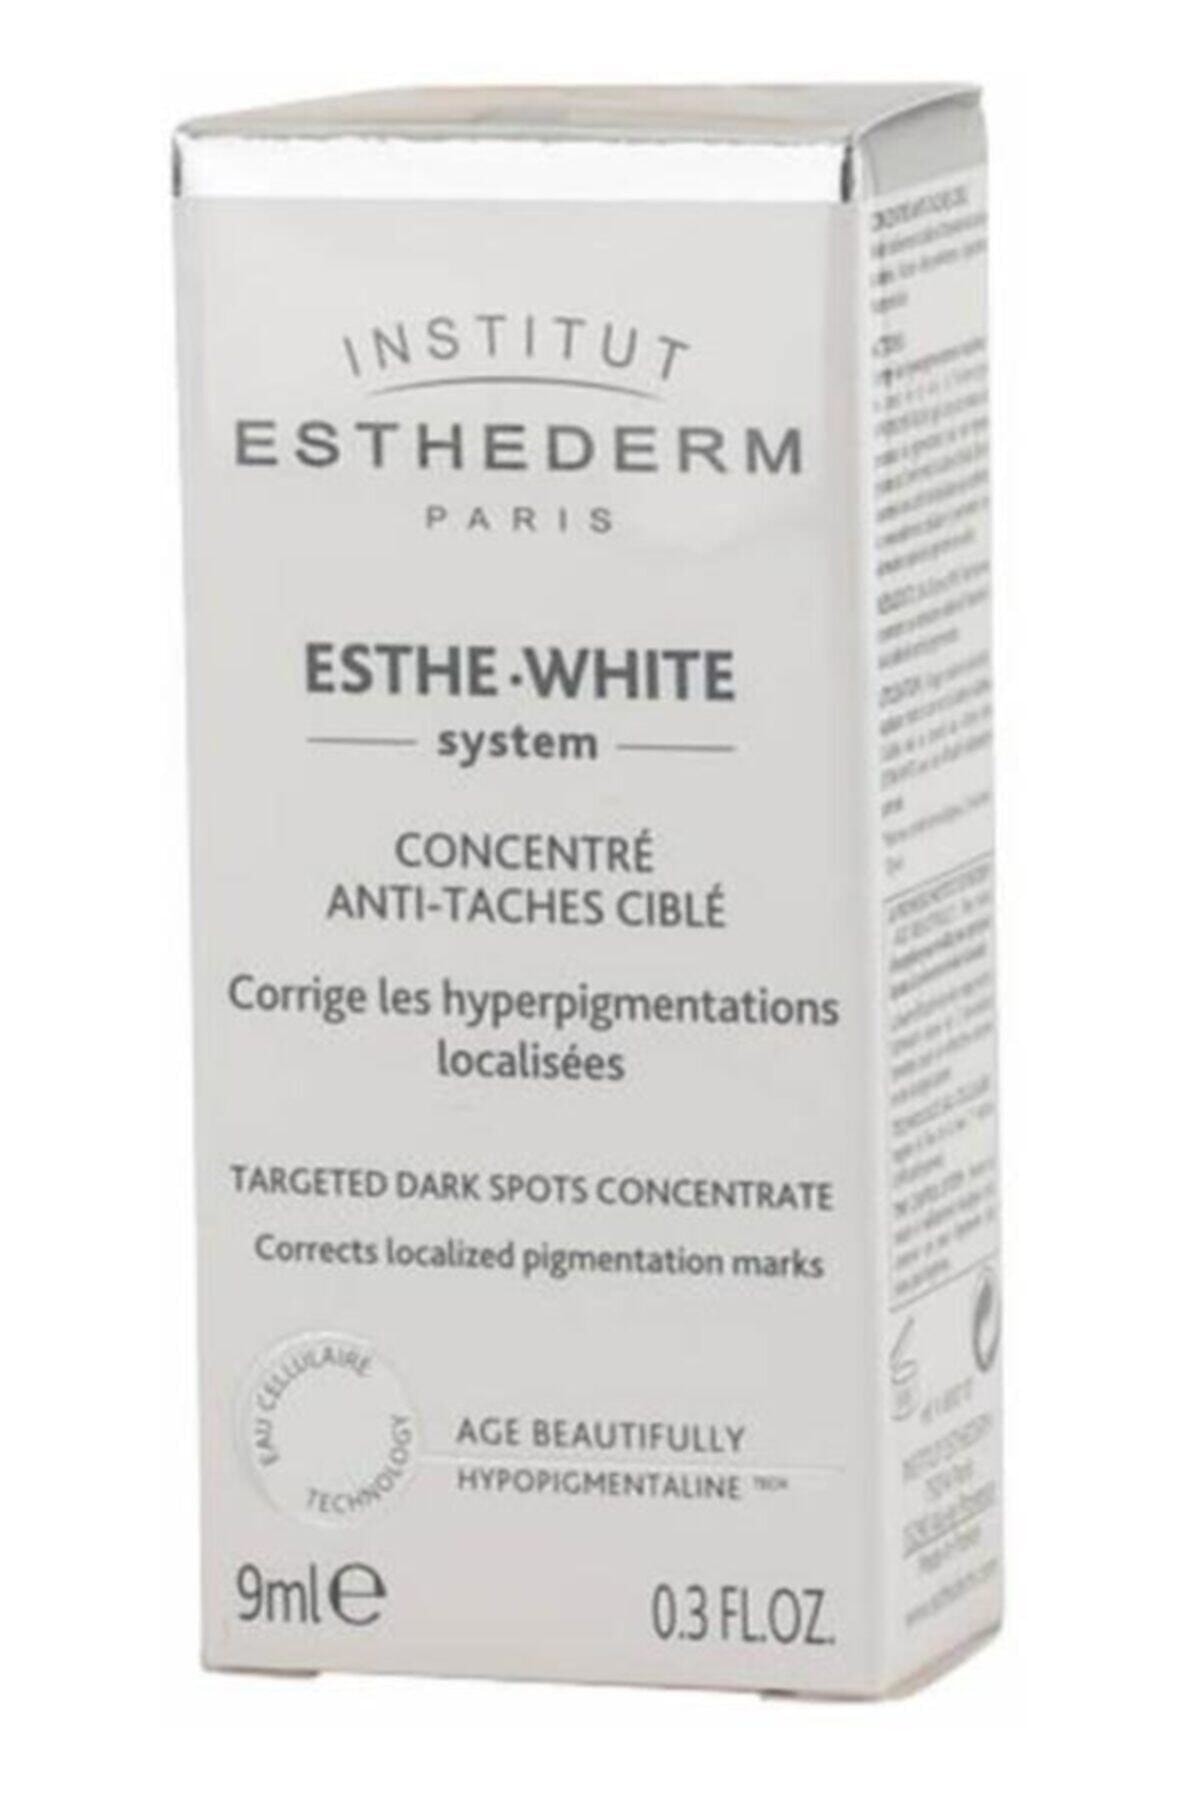 Institut Esthederm Este-white Targeted Dark Spots Concentrate 9ml